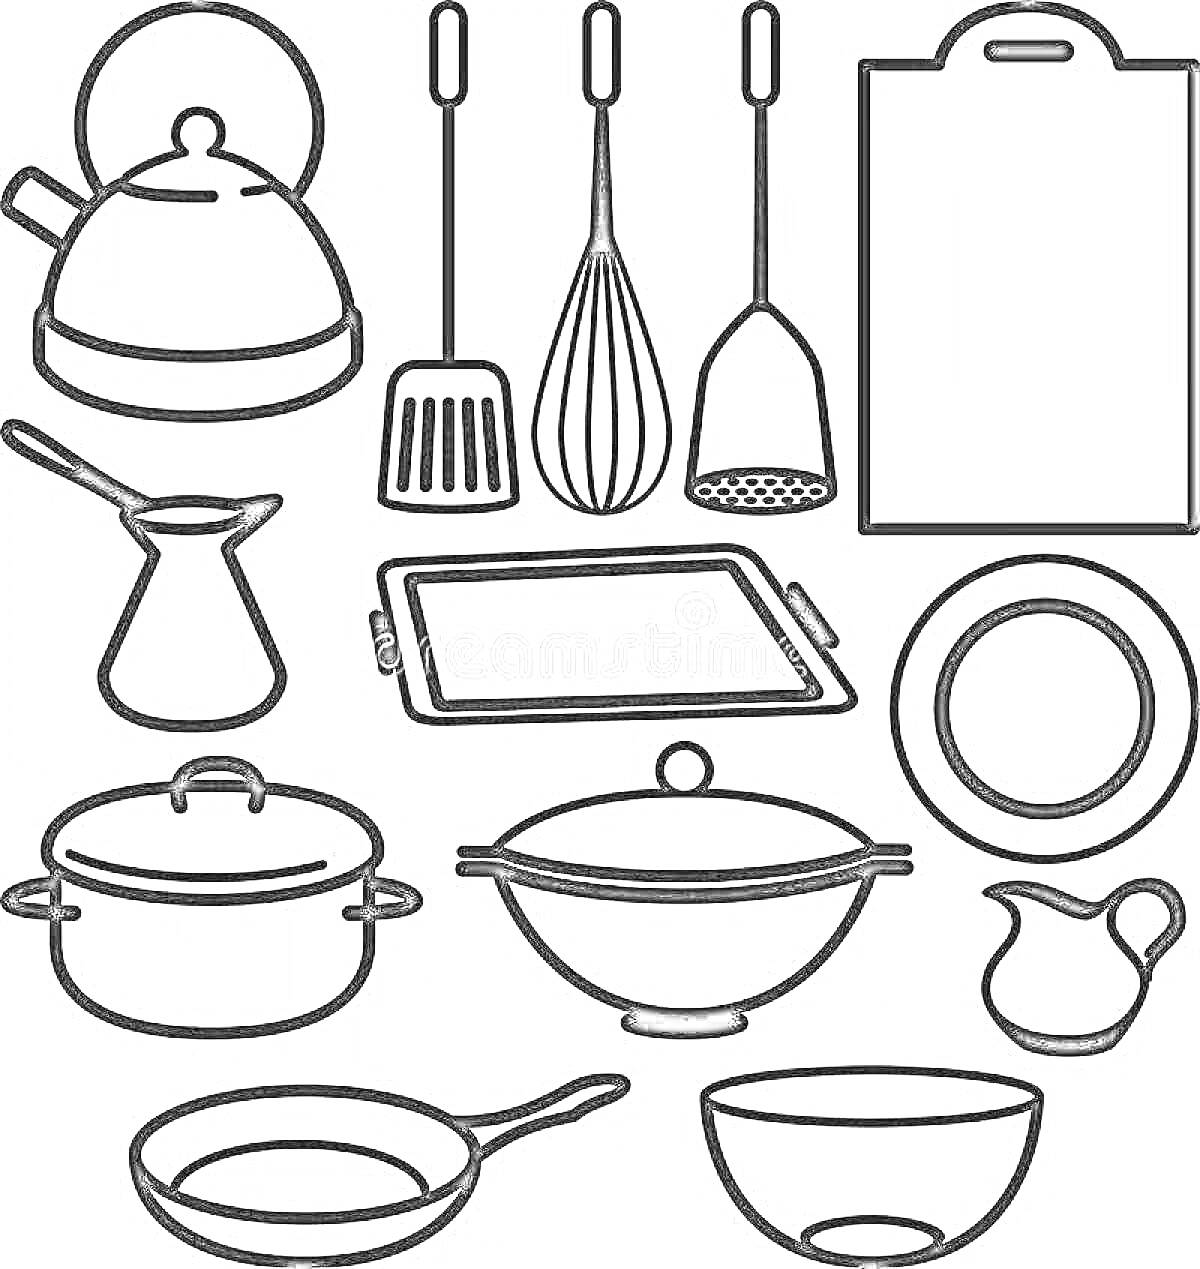 Раскраска Чайник, лопатка, венчик, шумовка, разделочная доска, джезва, противень, тарелка, кастрюля, сковорода с крышкой, кувшин, сковорода, салатник.